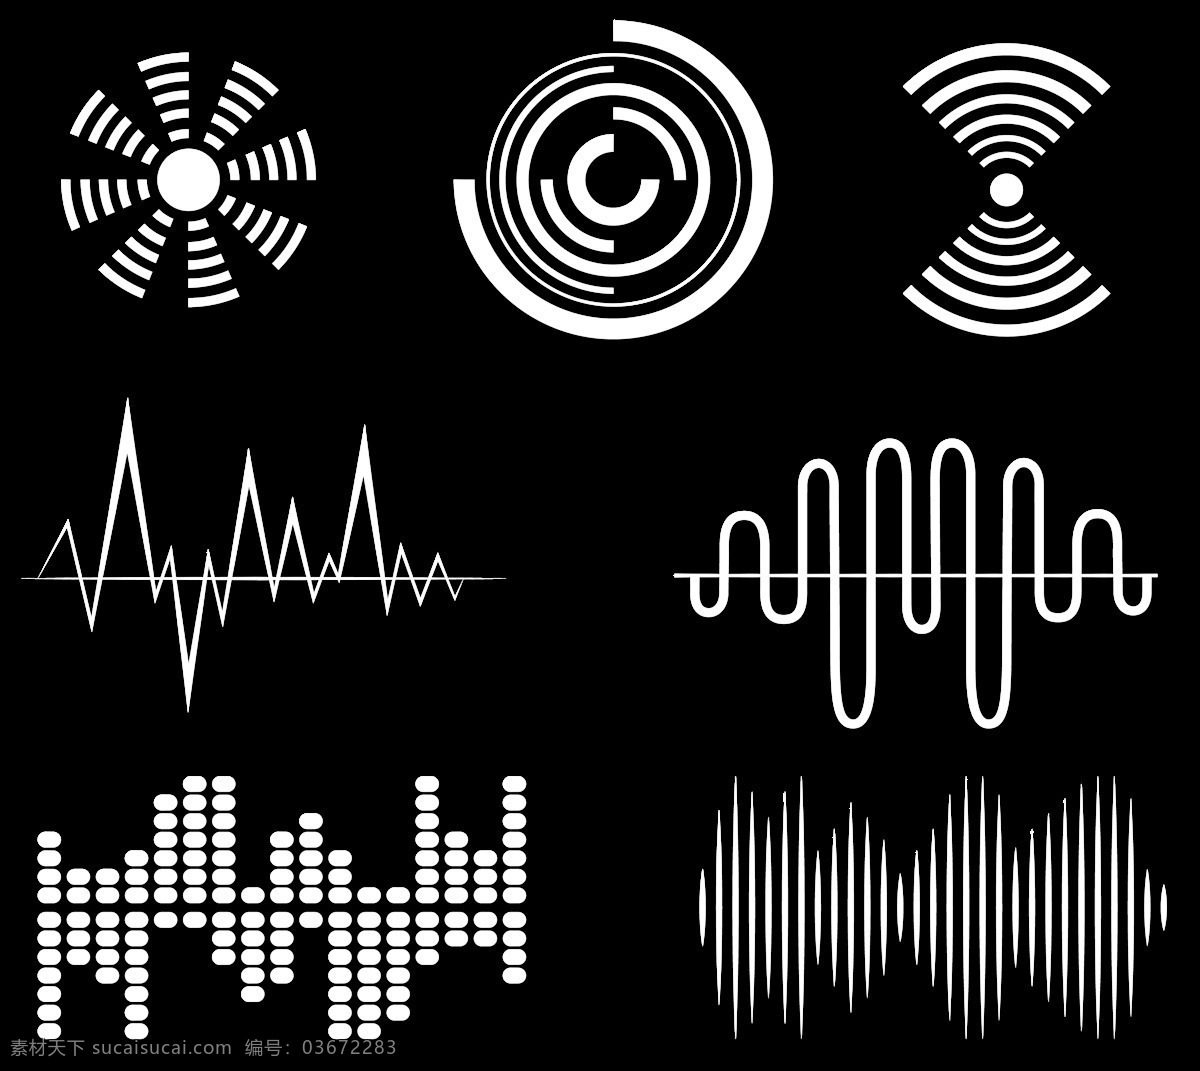 白色 声波 图案 免 抠 透明 图 层 音乐声波 声音波 均衡器 曲线 音量 显示 背景 音乐素材 线条 声波图形 声音波形 声波素材 音波线条 素材声音 音乐符号